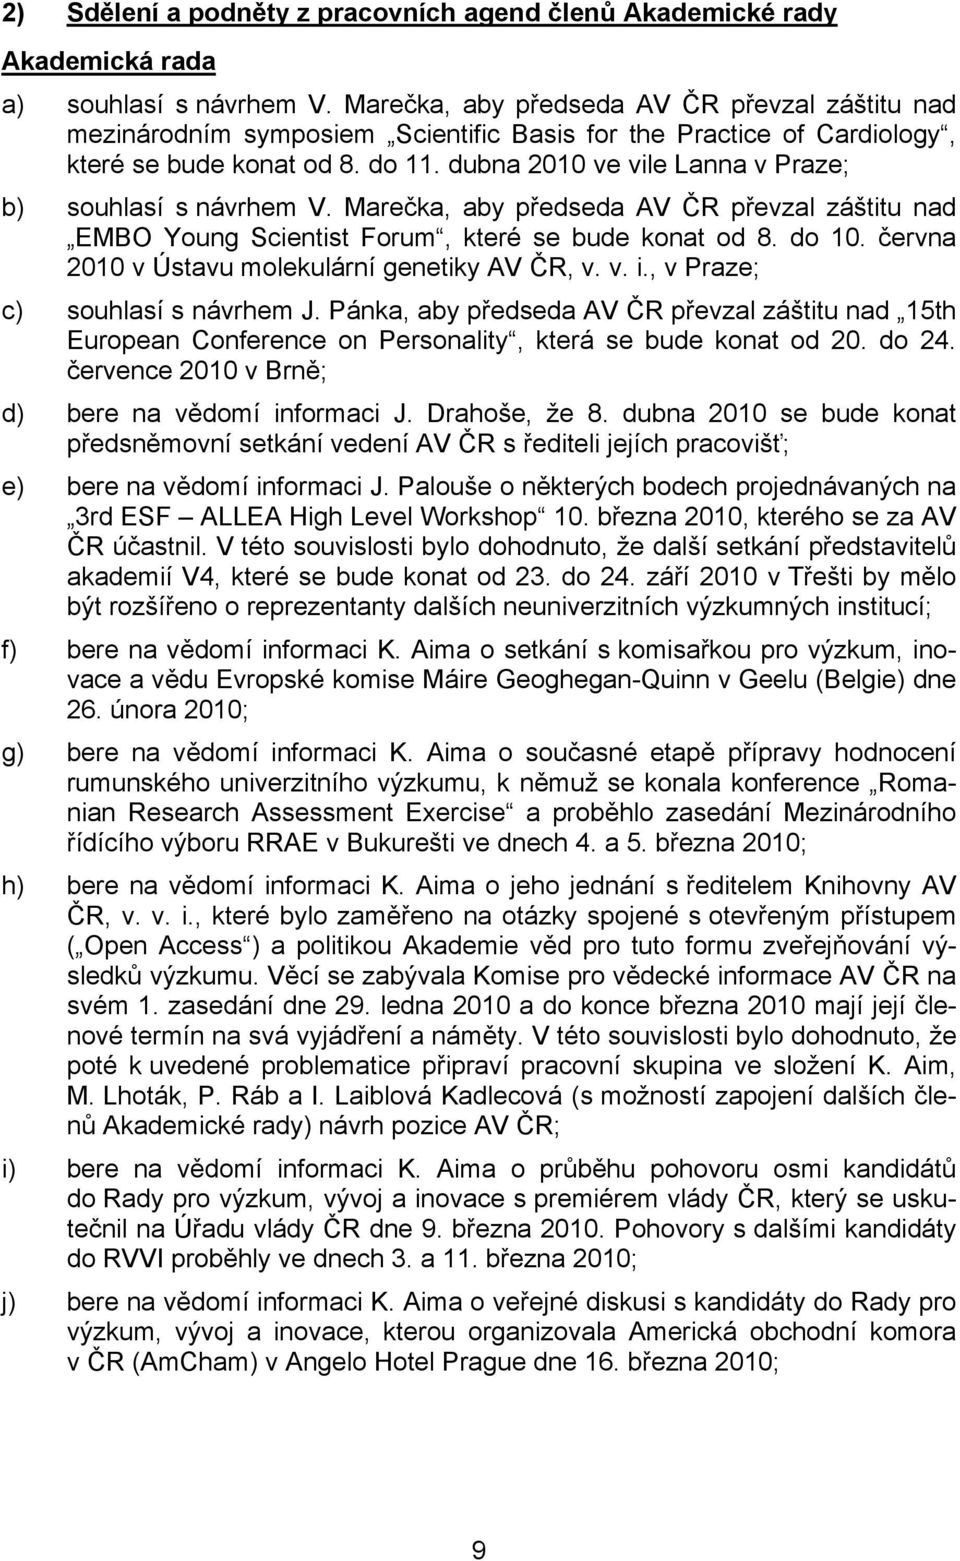 dubna 2010 ve vile Lanna v Praze; b) souhlasí s návrhem V. Marečka, aby předseda AV ČR převzal záštitu nad EMBO Young Scientist Forum, které se bude konat od 8. do 10.